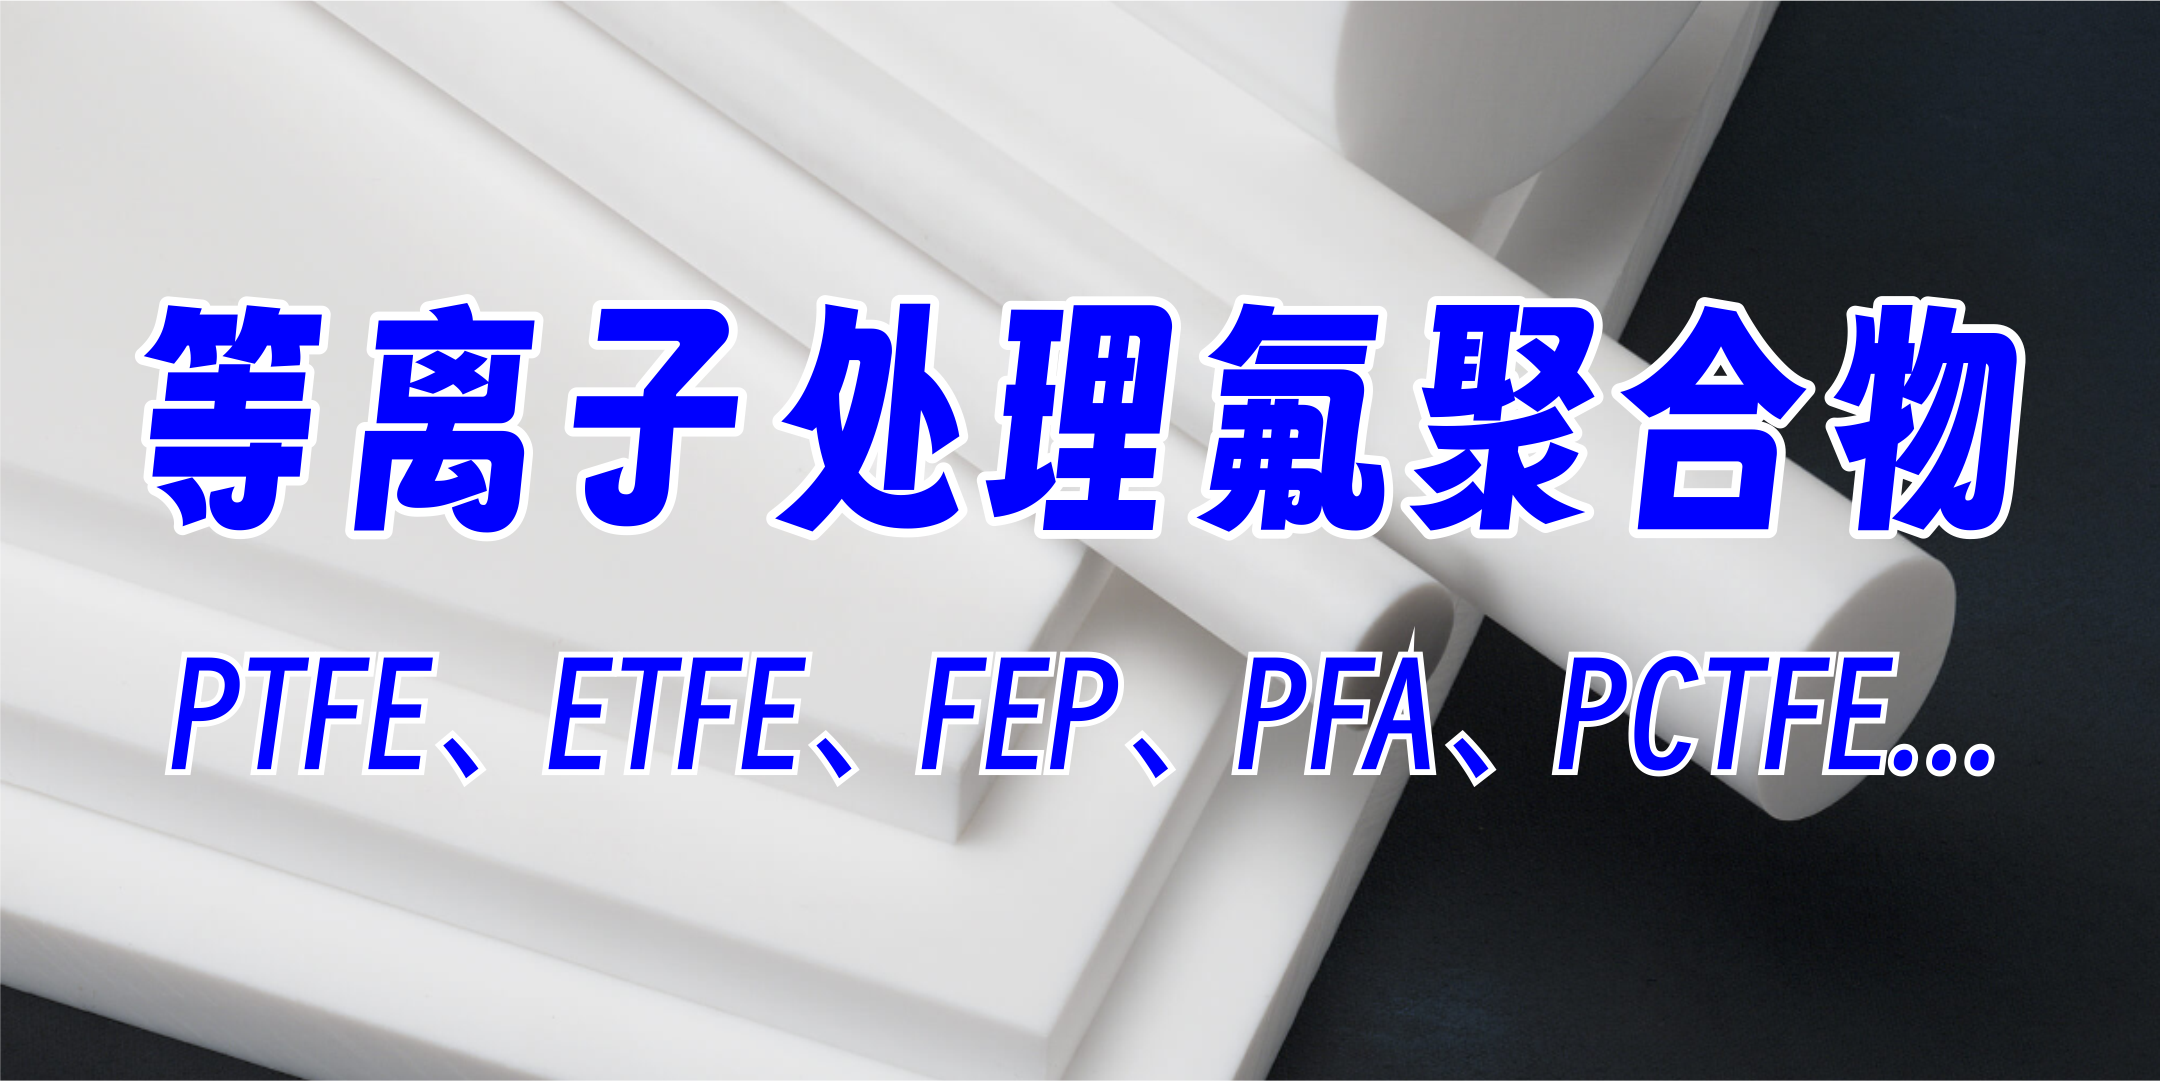 PTFE聚四氟乙烯等离子处理，提高粘接附着力、亲水性，氟聚合物材料等离子处理，提升达因值